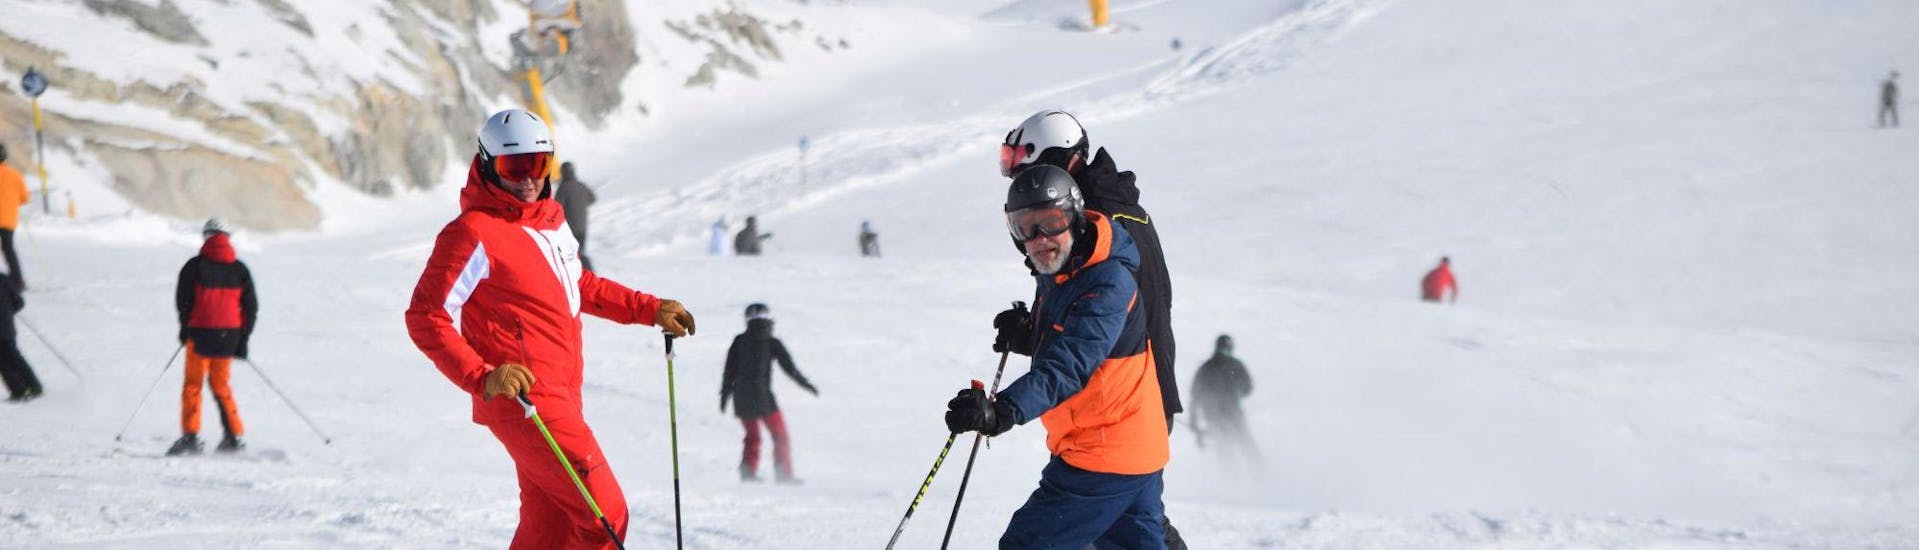 Ein Skilehrer mit zwei Schülern während des Skikurses für Jugendliche und Erwachsene aller Levels mit der Skischule Snowsports Westendorf.